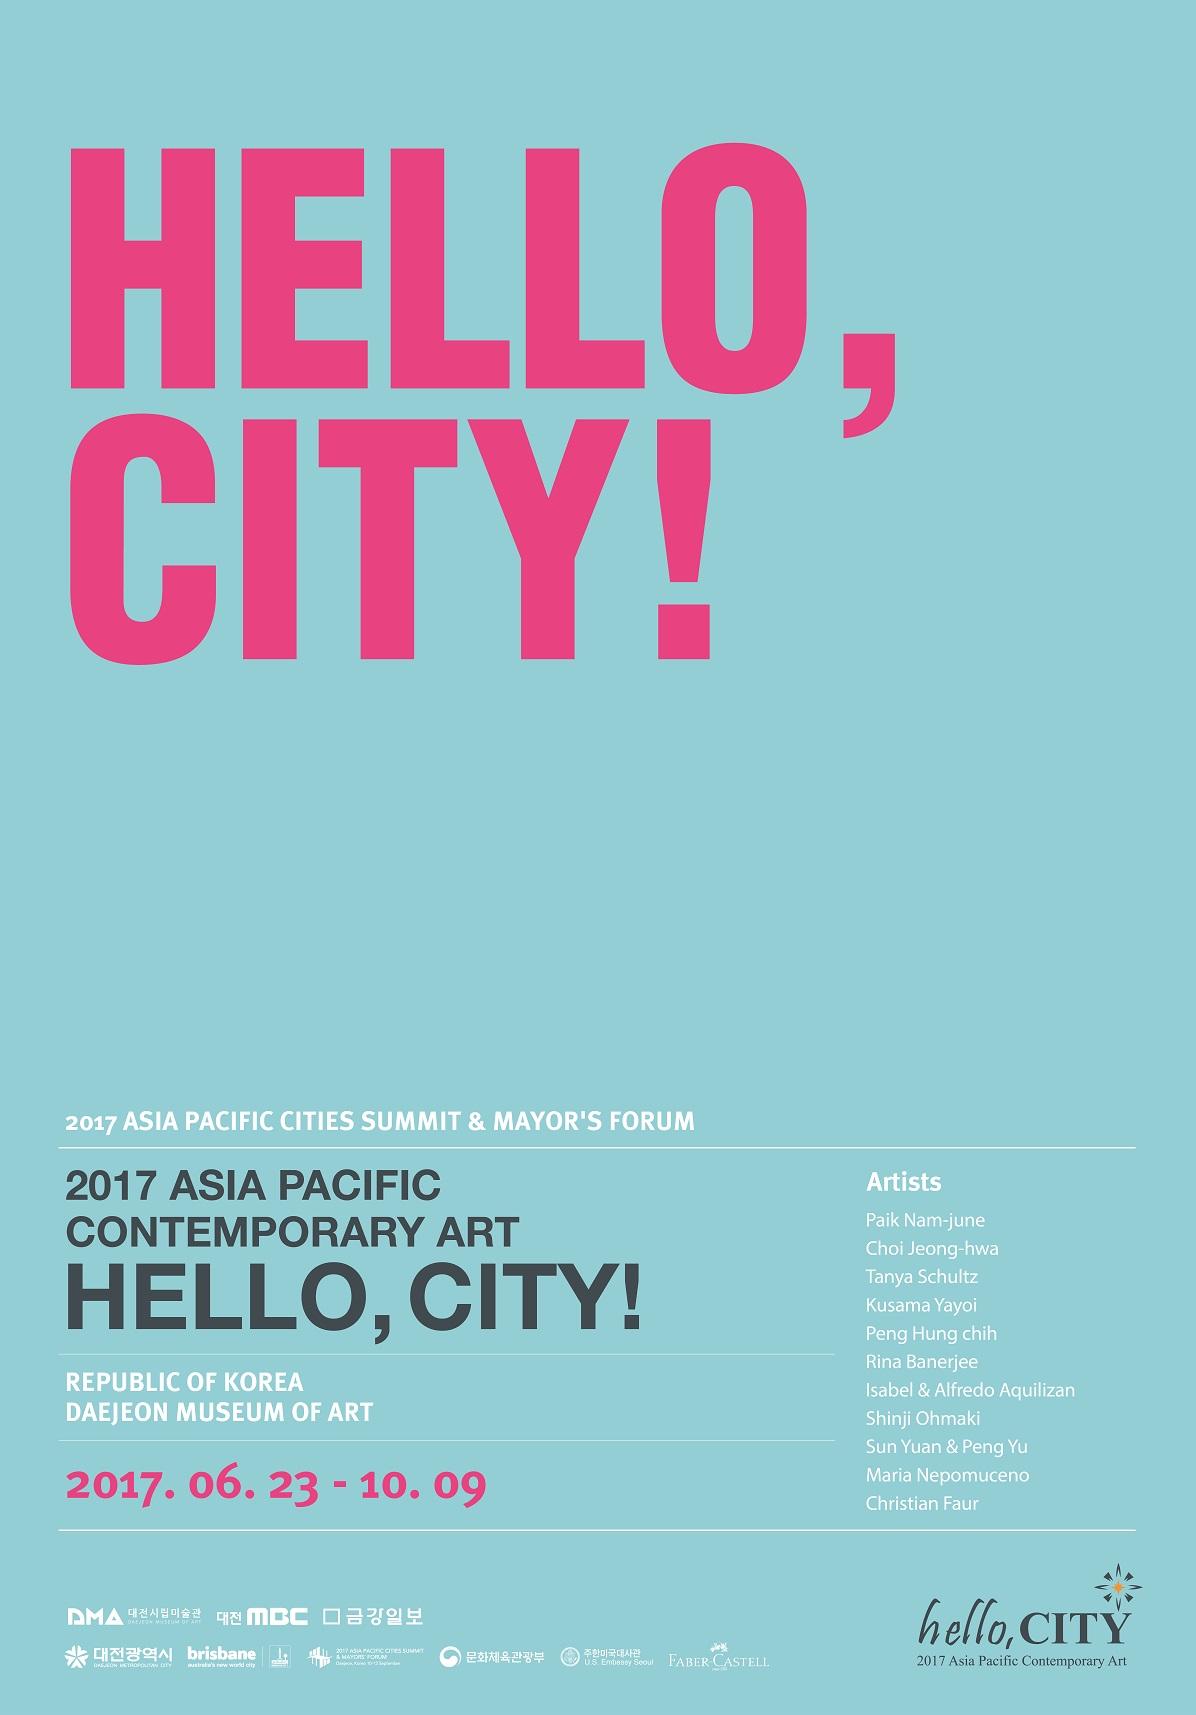 大巻伸嗣、アルフレド＆イザベル・アキリザン　「 Hello, City !」に出展、テジョン、韓国